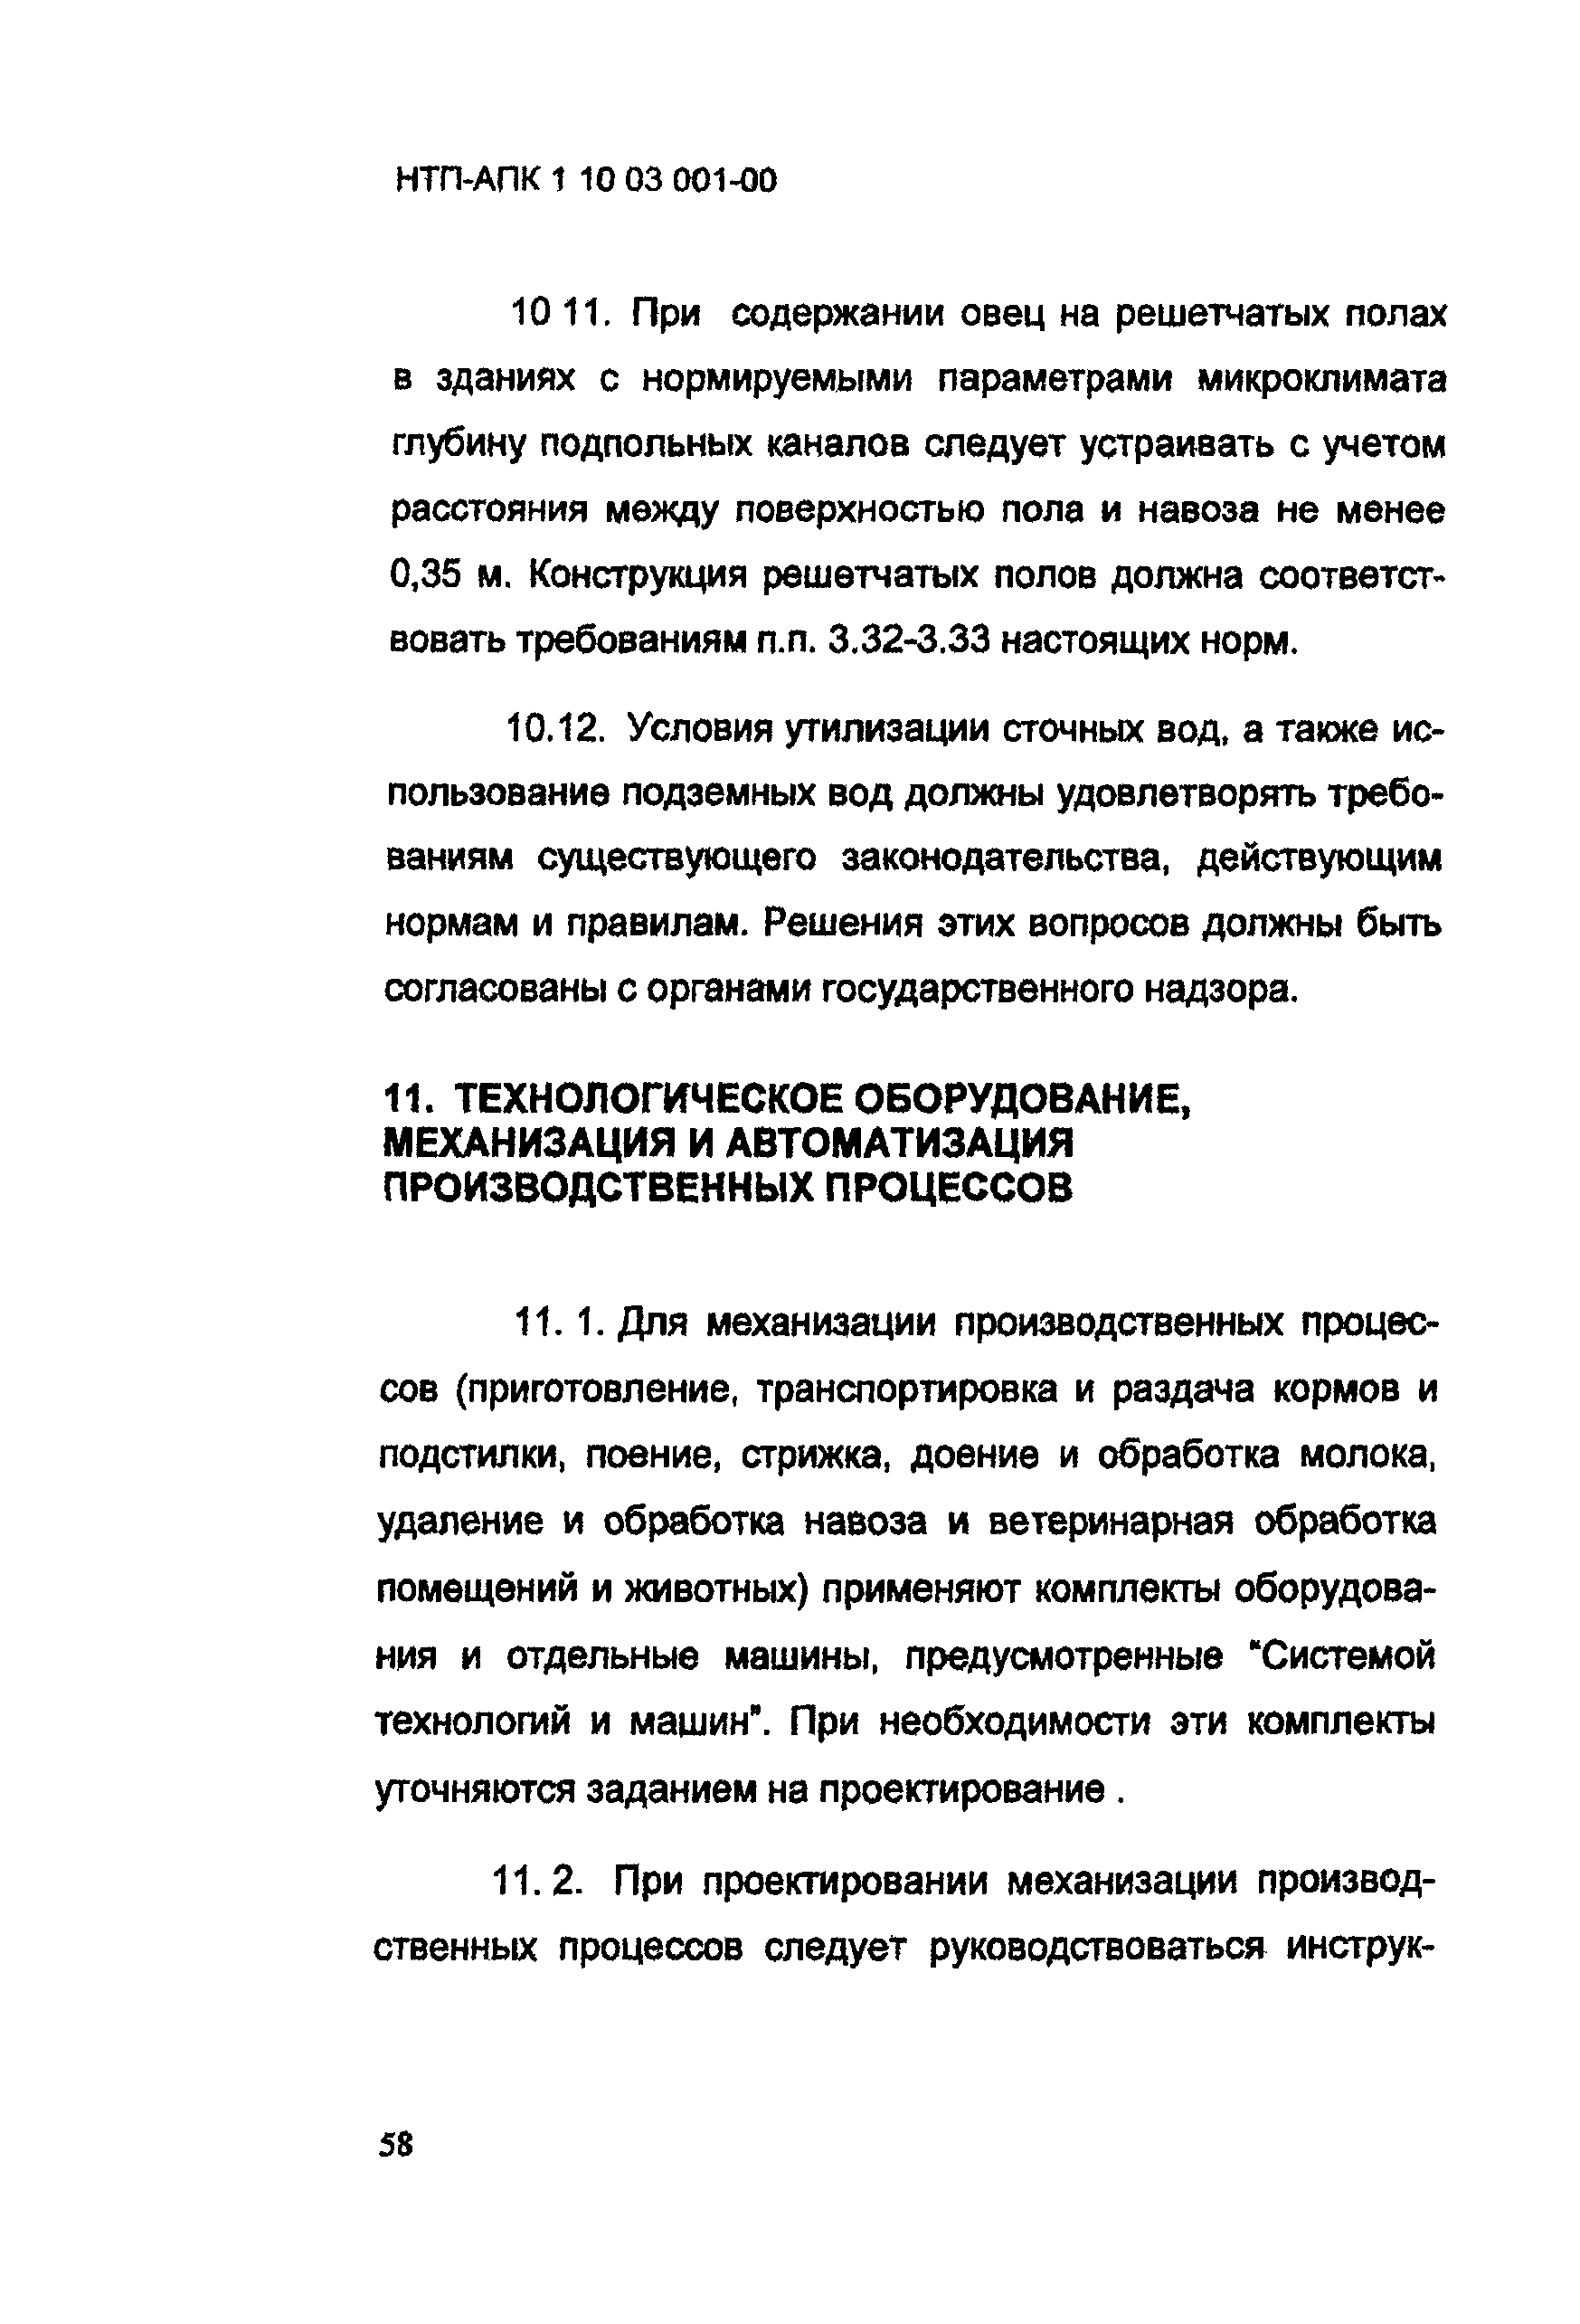 НТП АПК 1.10.03.001-00